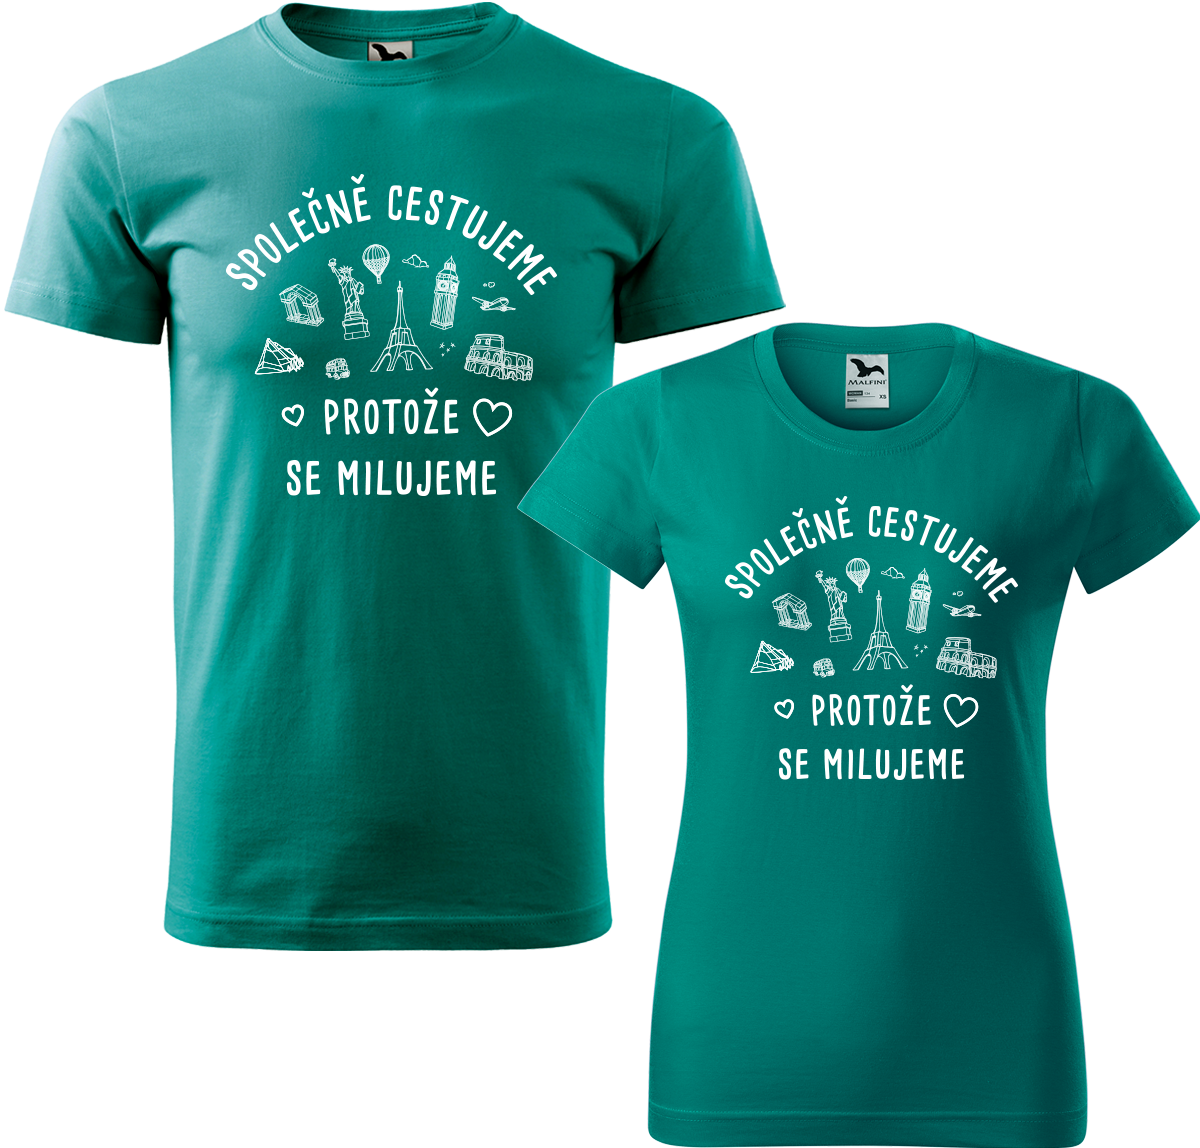 Tričko pro páry - Společně cestujeme protože se milujeme Barva: Emerald (19), Velikost dámské tričko: S, Velikost pánské tričko: S